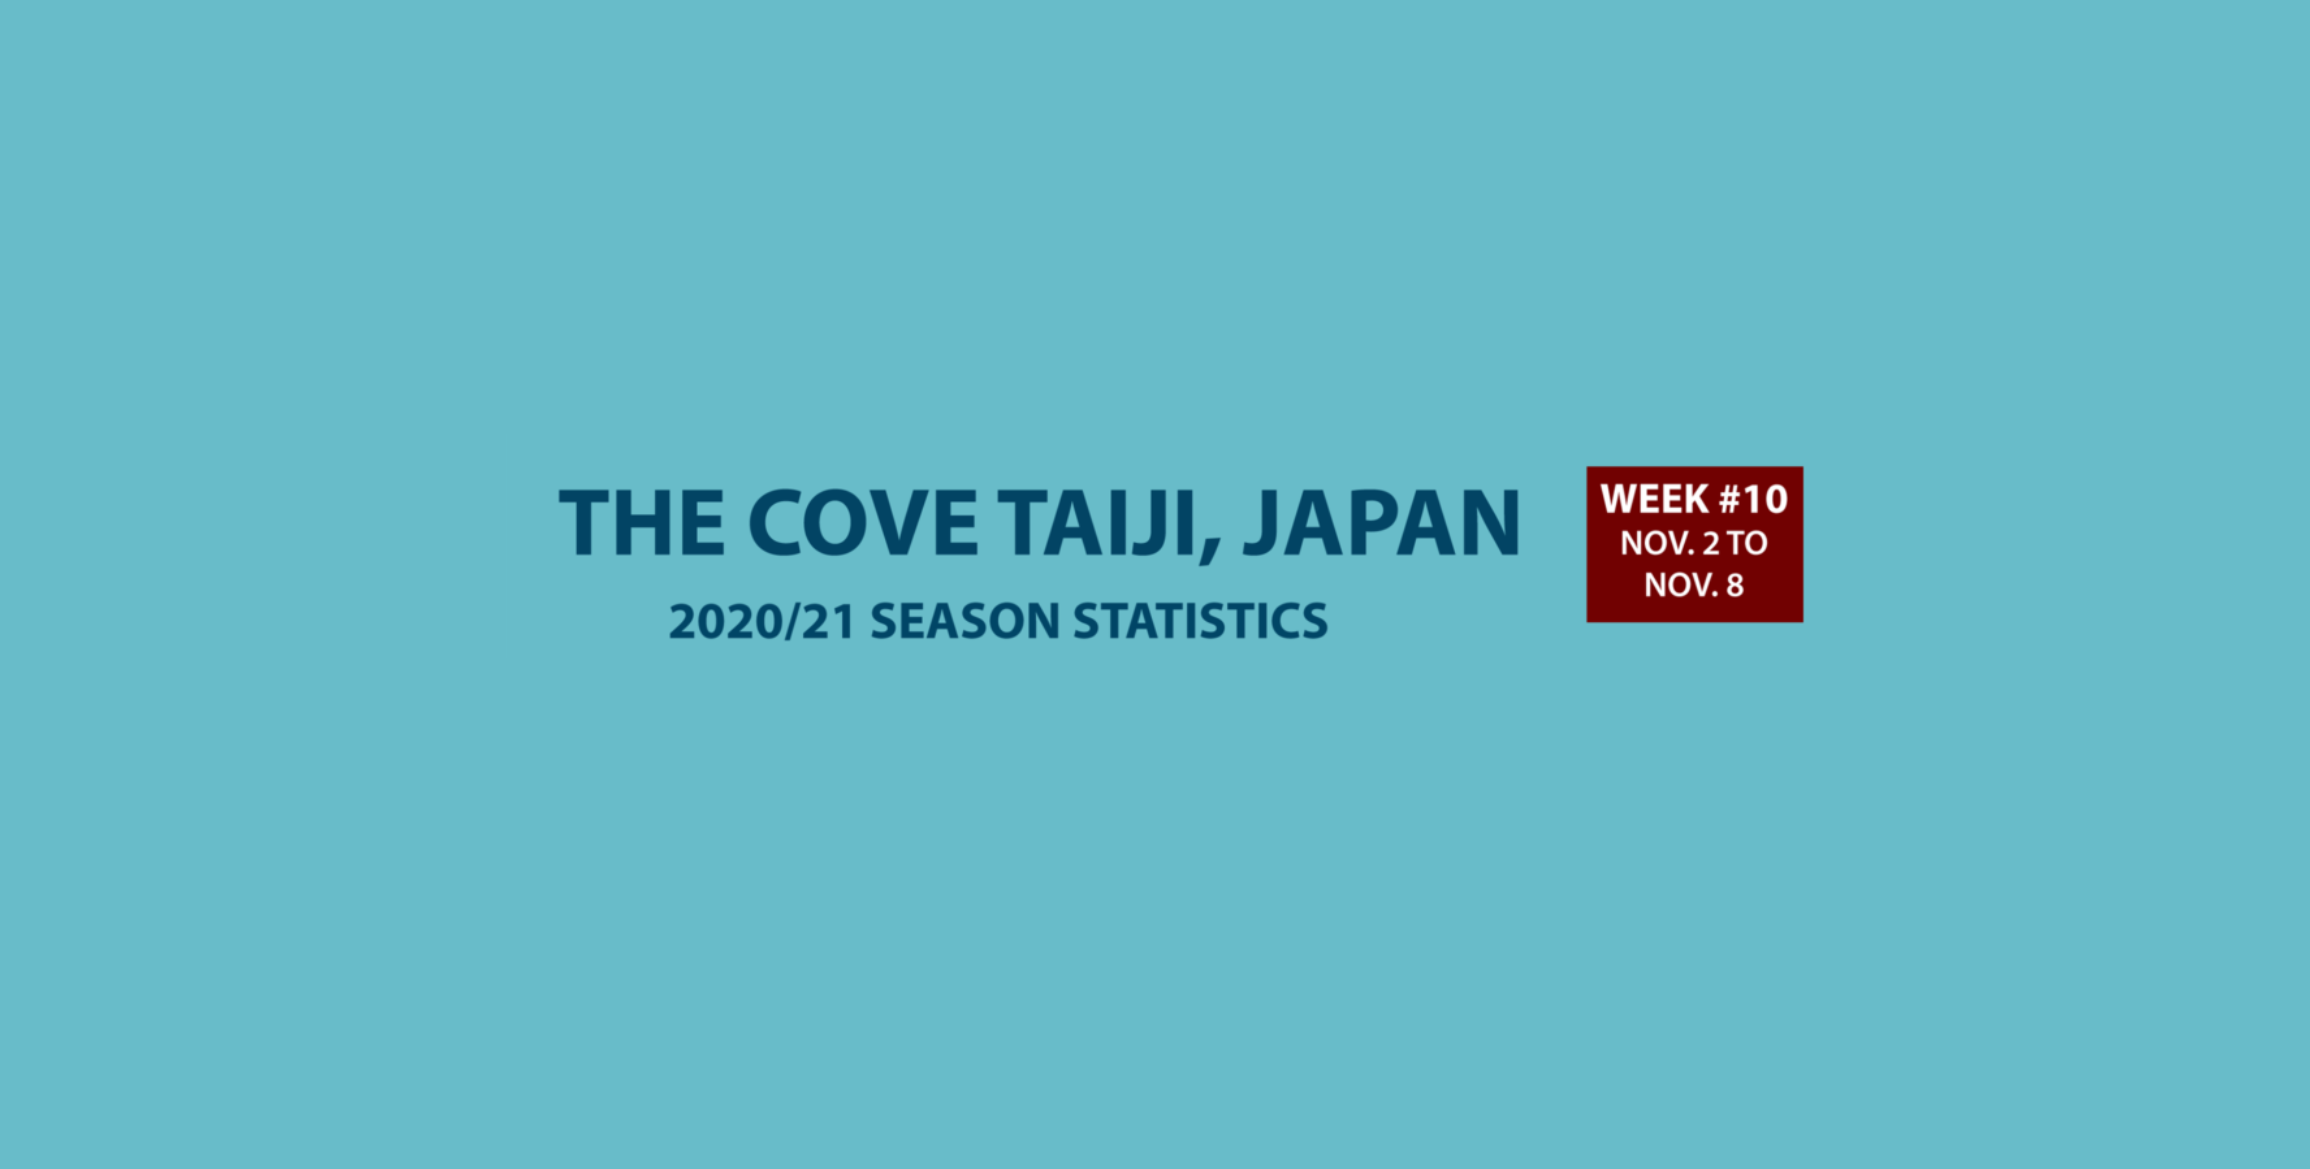 Chasse au dauphin à Taïji (Japon) – Bilan semaine du 02 au 08 novembre 2020 #10